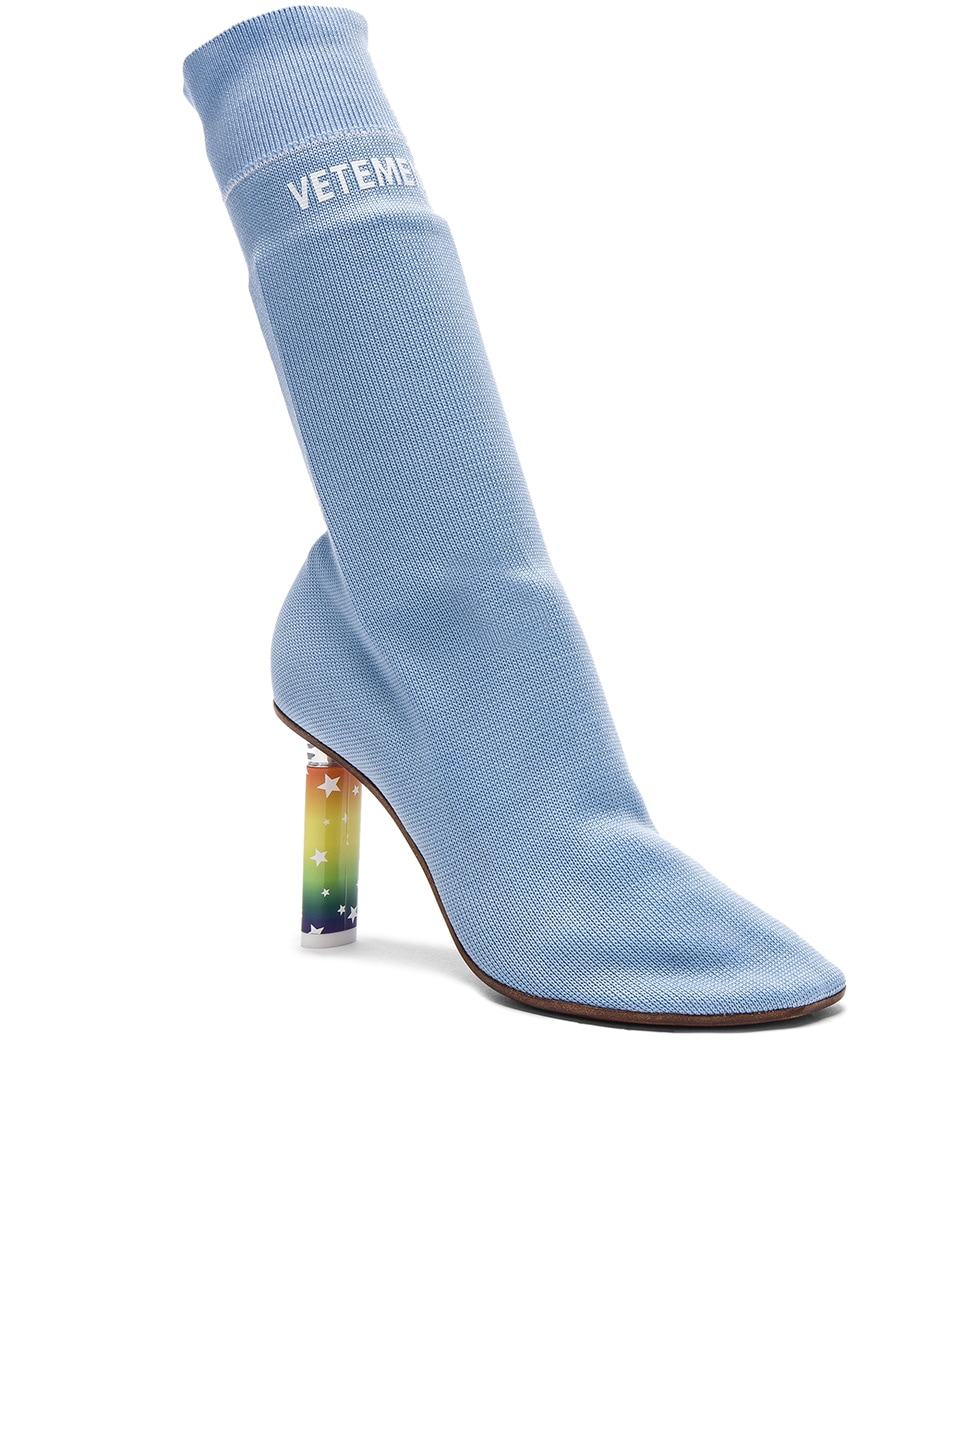 VETEMENTS 80Mm Elastic Boots W/ Lighter Heel, Light Blue in Llack ...